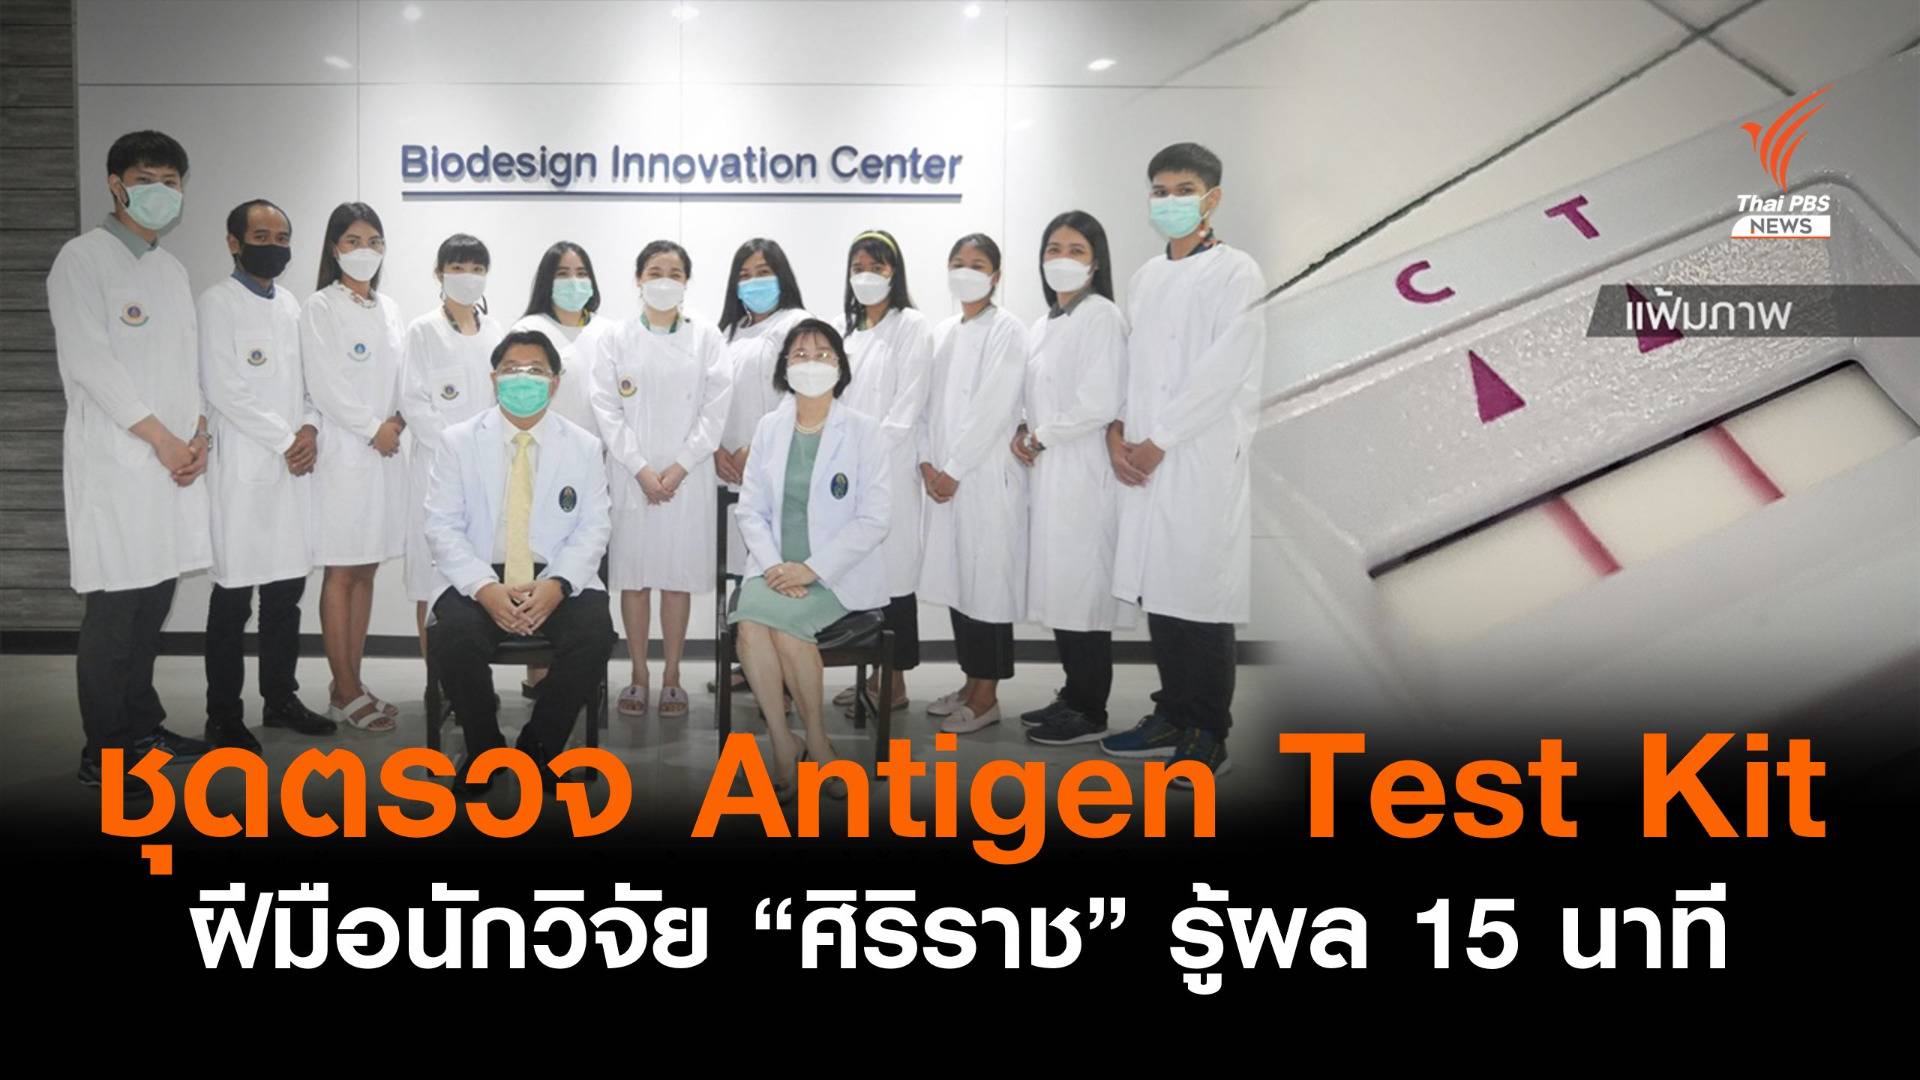 สำเร็จ! ชุดตรวจ Antigen Test Kit ฝีมือนักวิจัย "ศิริราช" รู้ผล 15 นาที